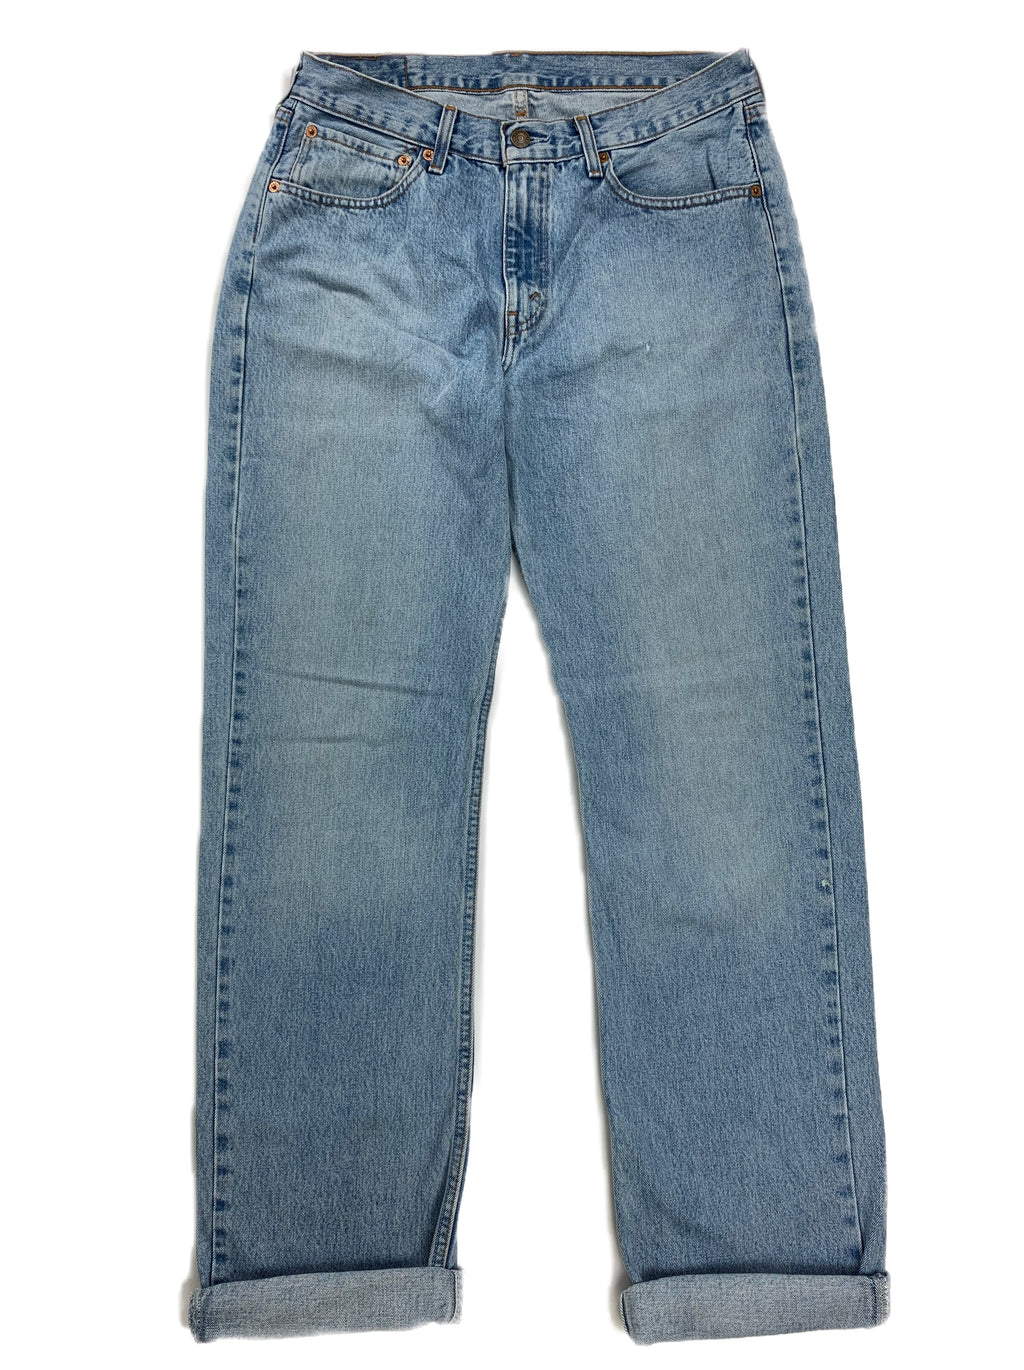 Vintage Levi's Jeans 751 Classic Dad Fit. - Restorecph